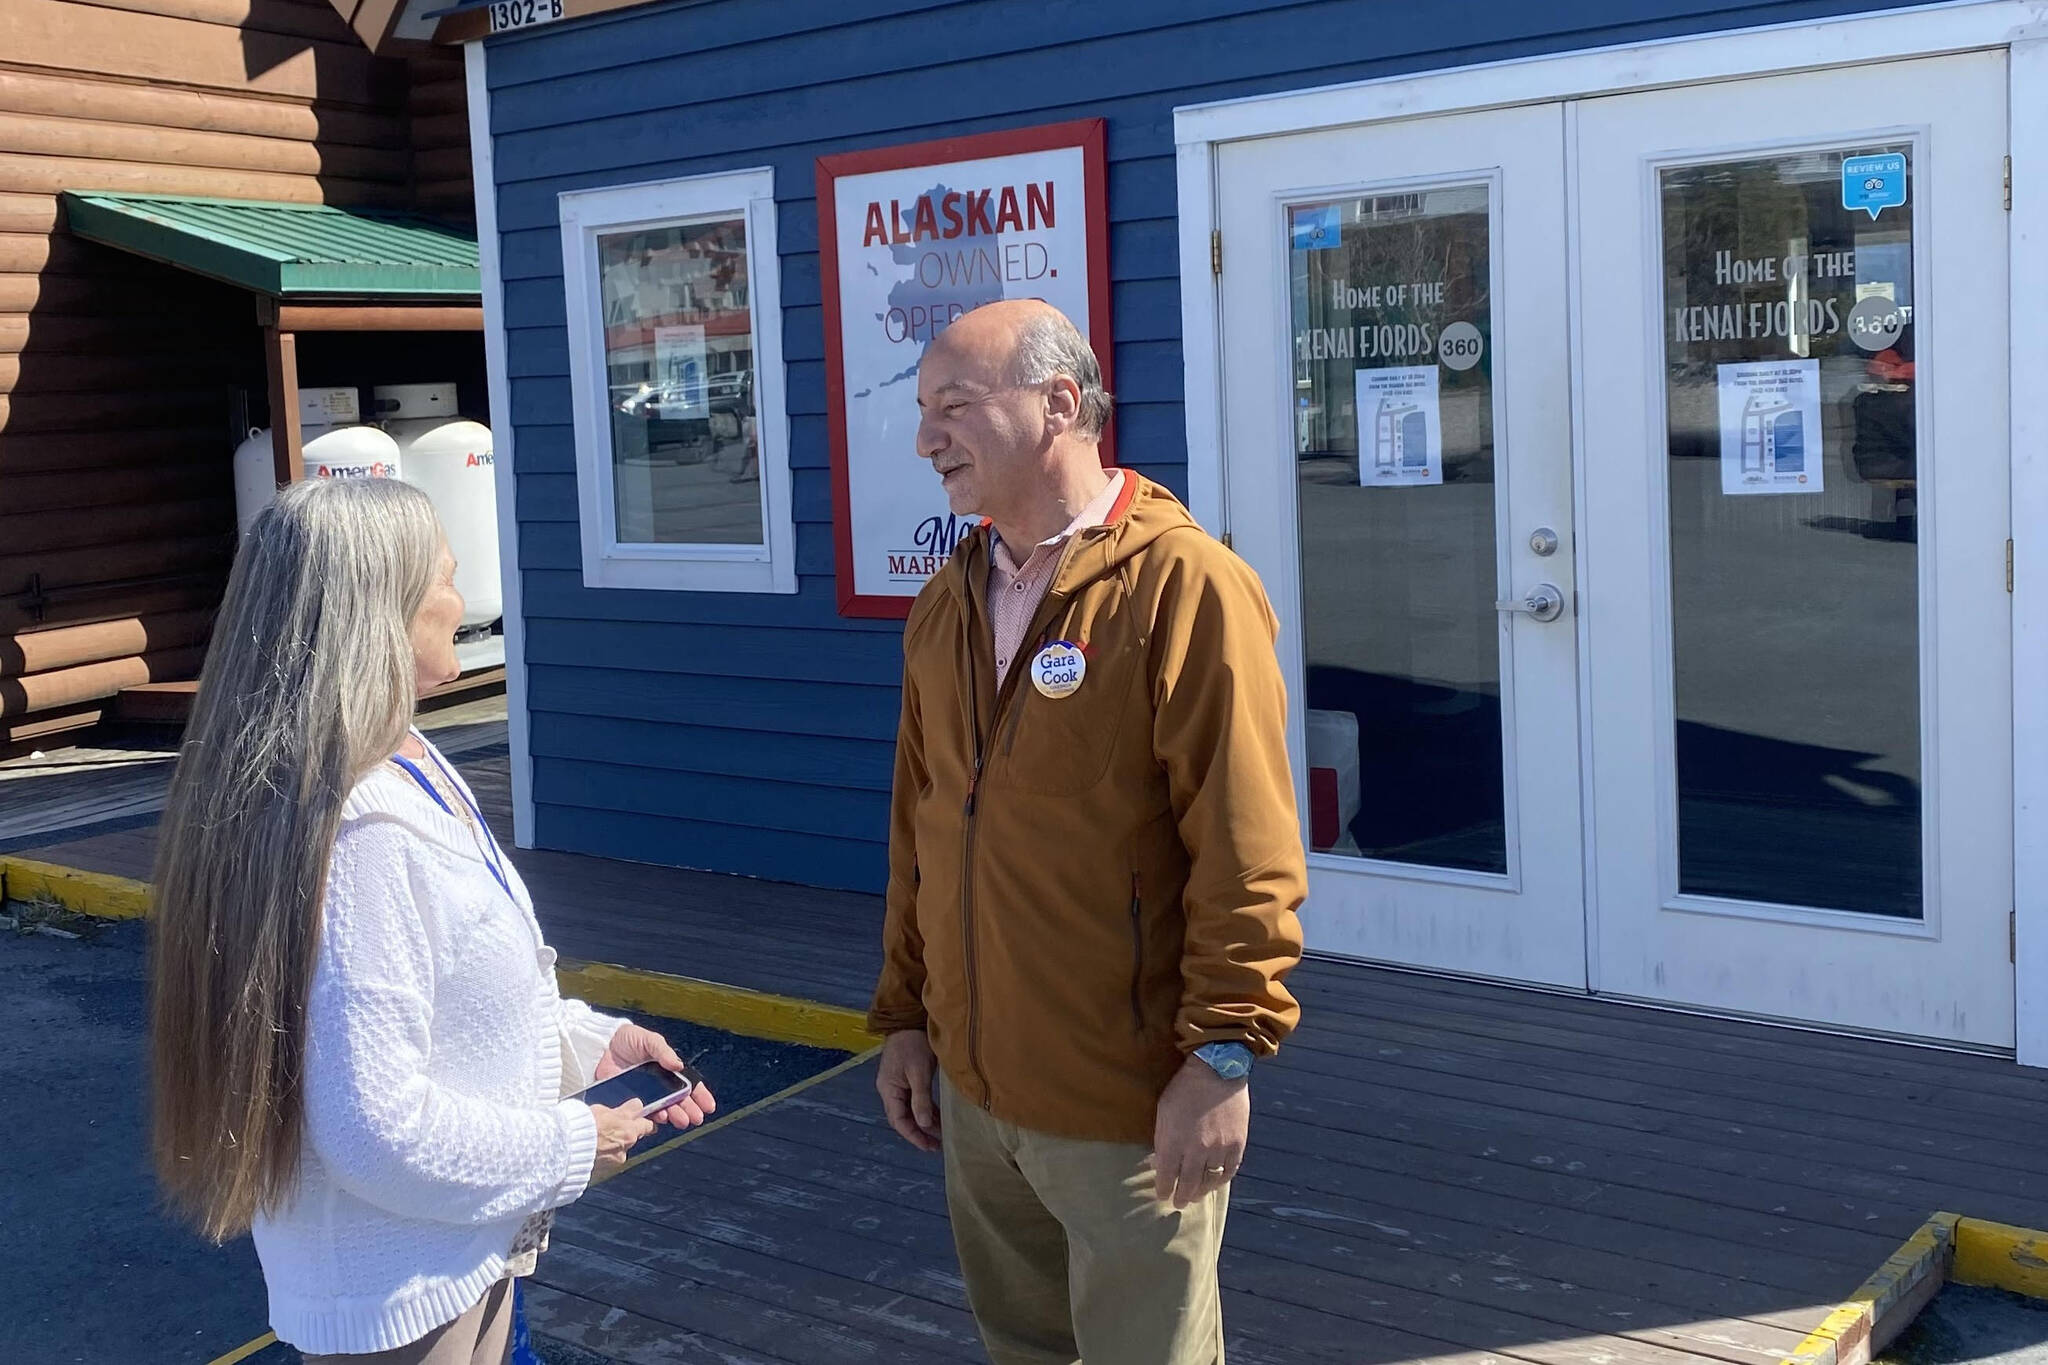 Alaska gubernatorial candidate Les Gara campaigns on Friday, May 6, 2022, in Seward, Alaska. (Photo by Nate Graham, courtesy of Les Gara)